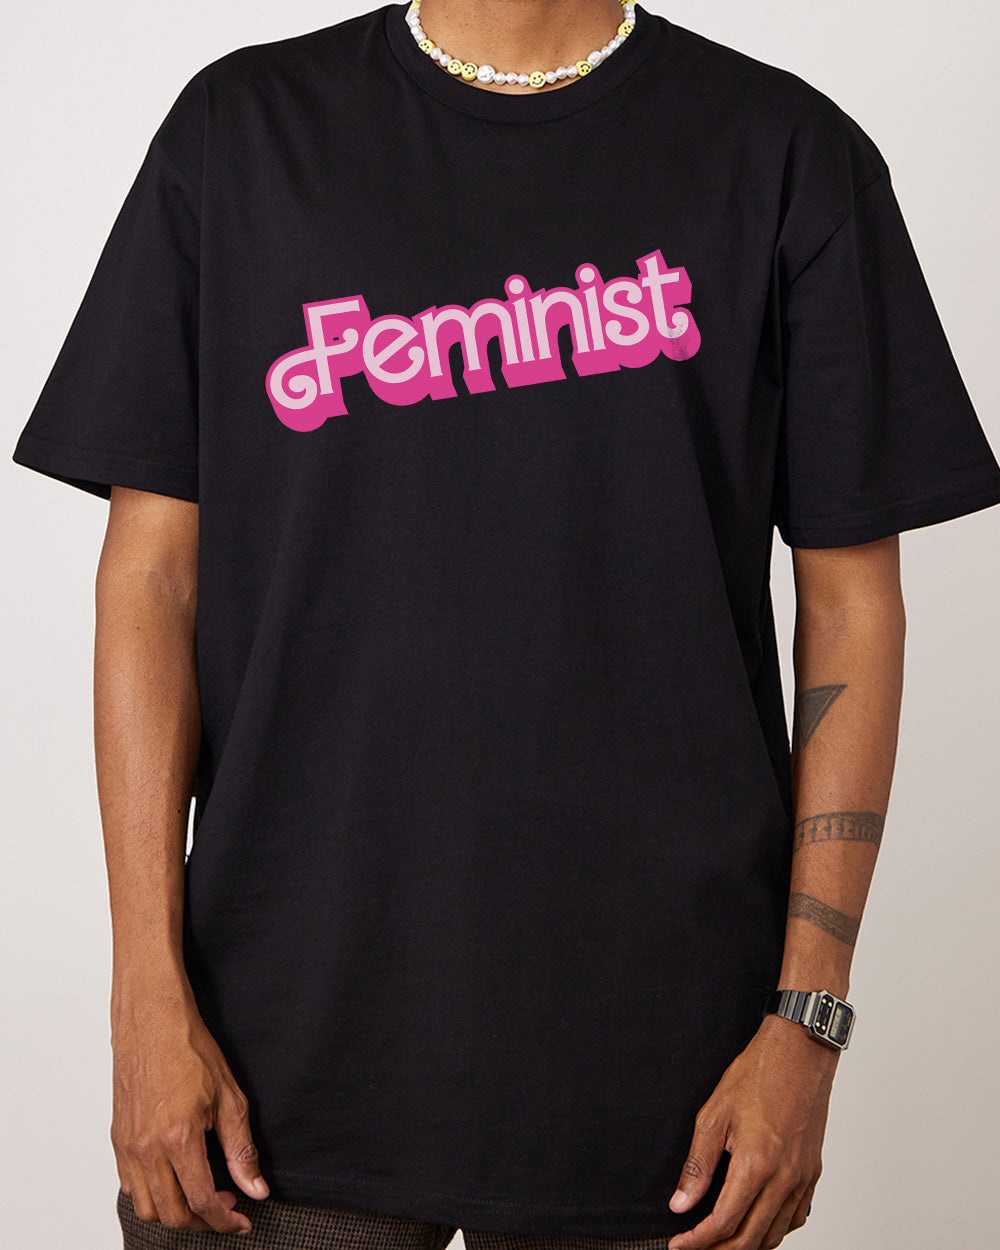 Feminist T-Shirt Australia Online